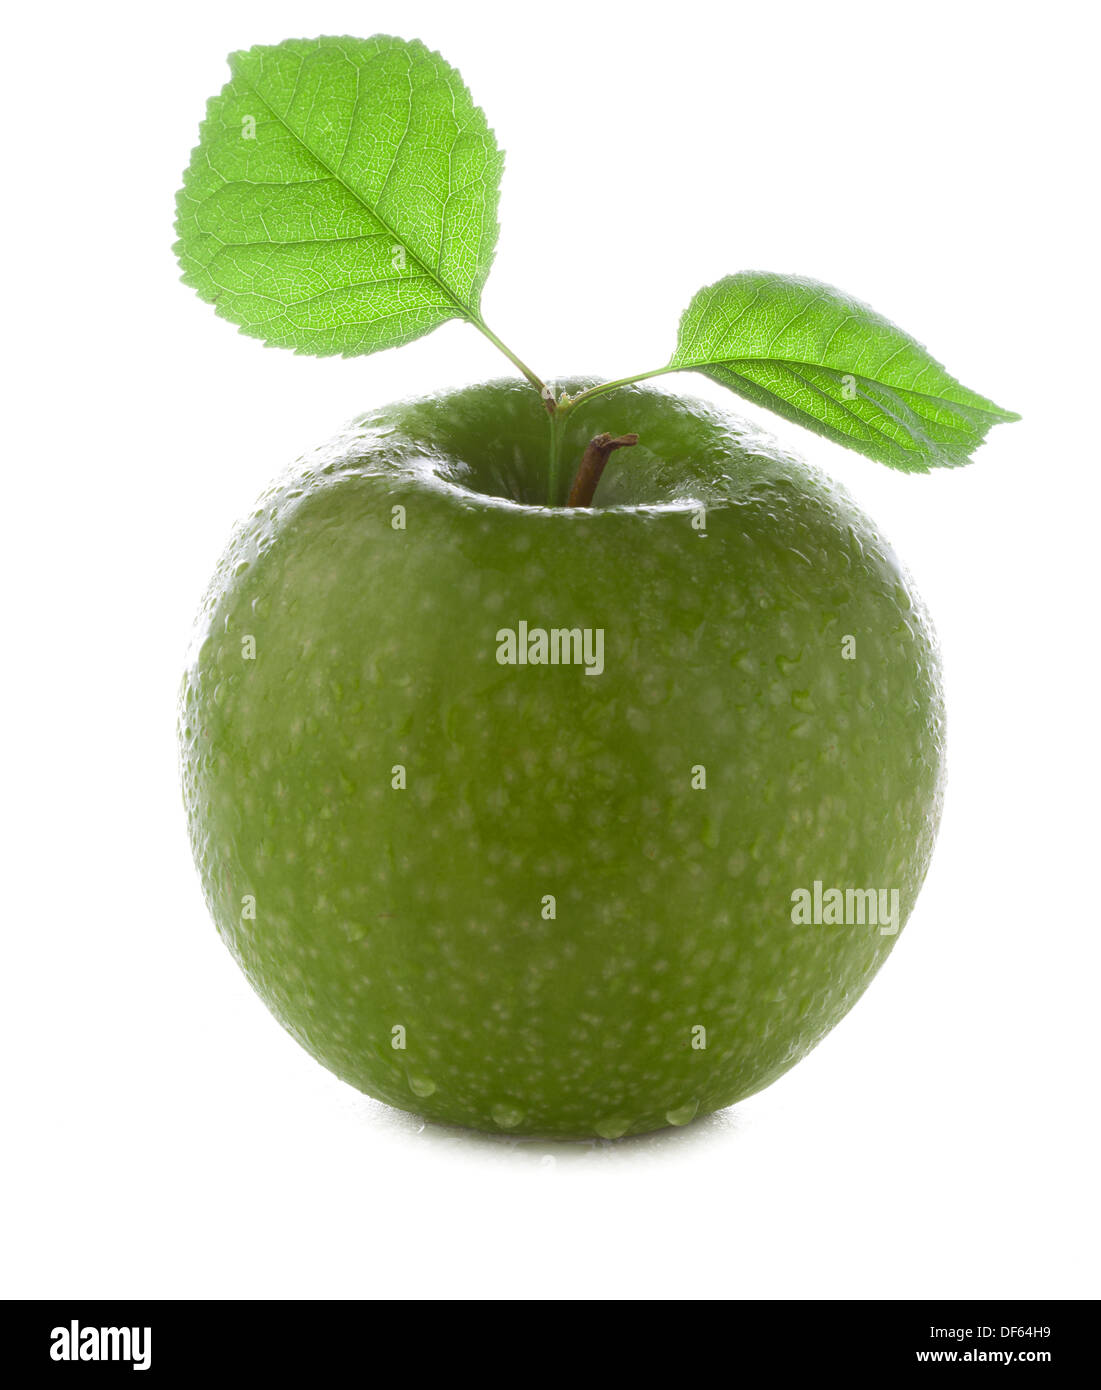 Produits frais et humide avec de la pomme verte feuille verte avec de l'eau et à l'aide de gouttes isolé sur fond blanc Banque D'Images